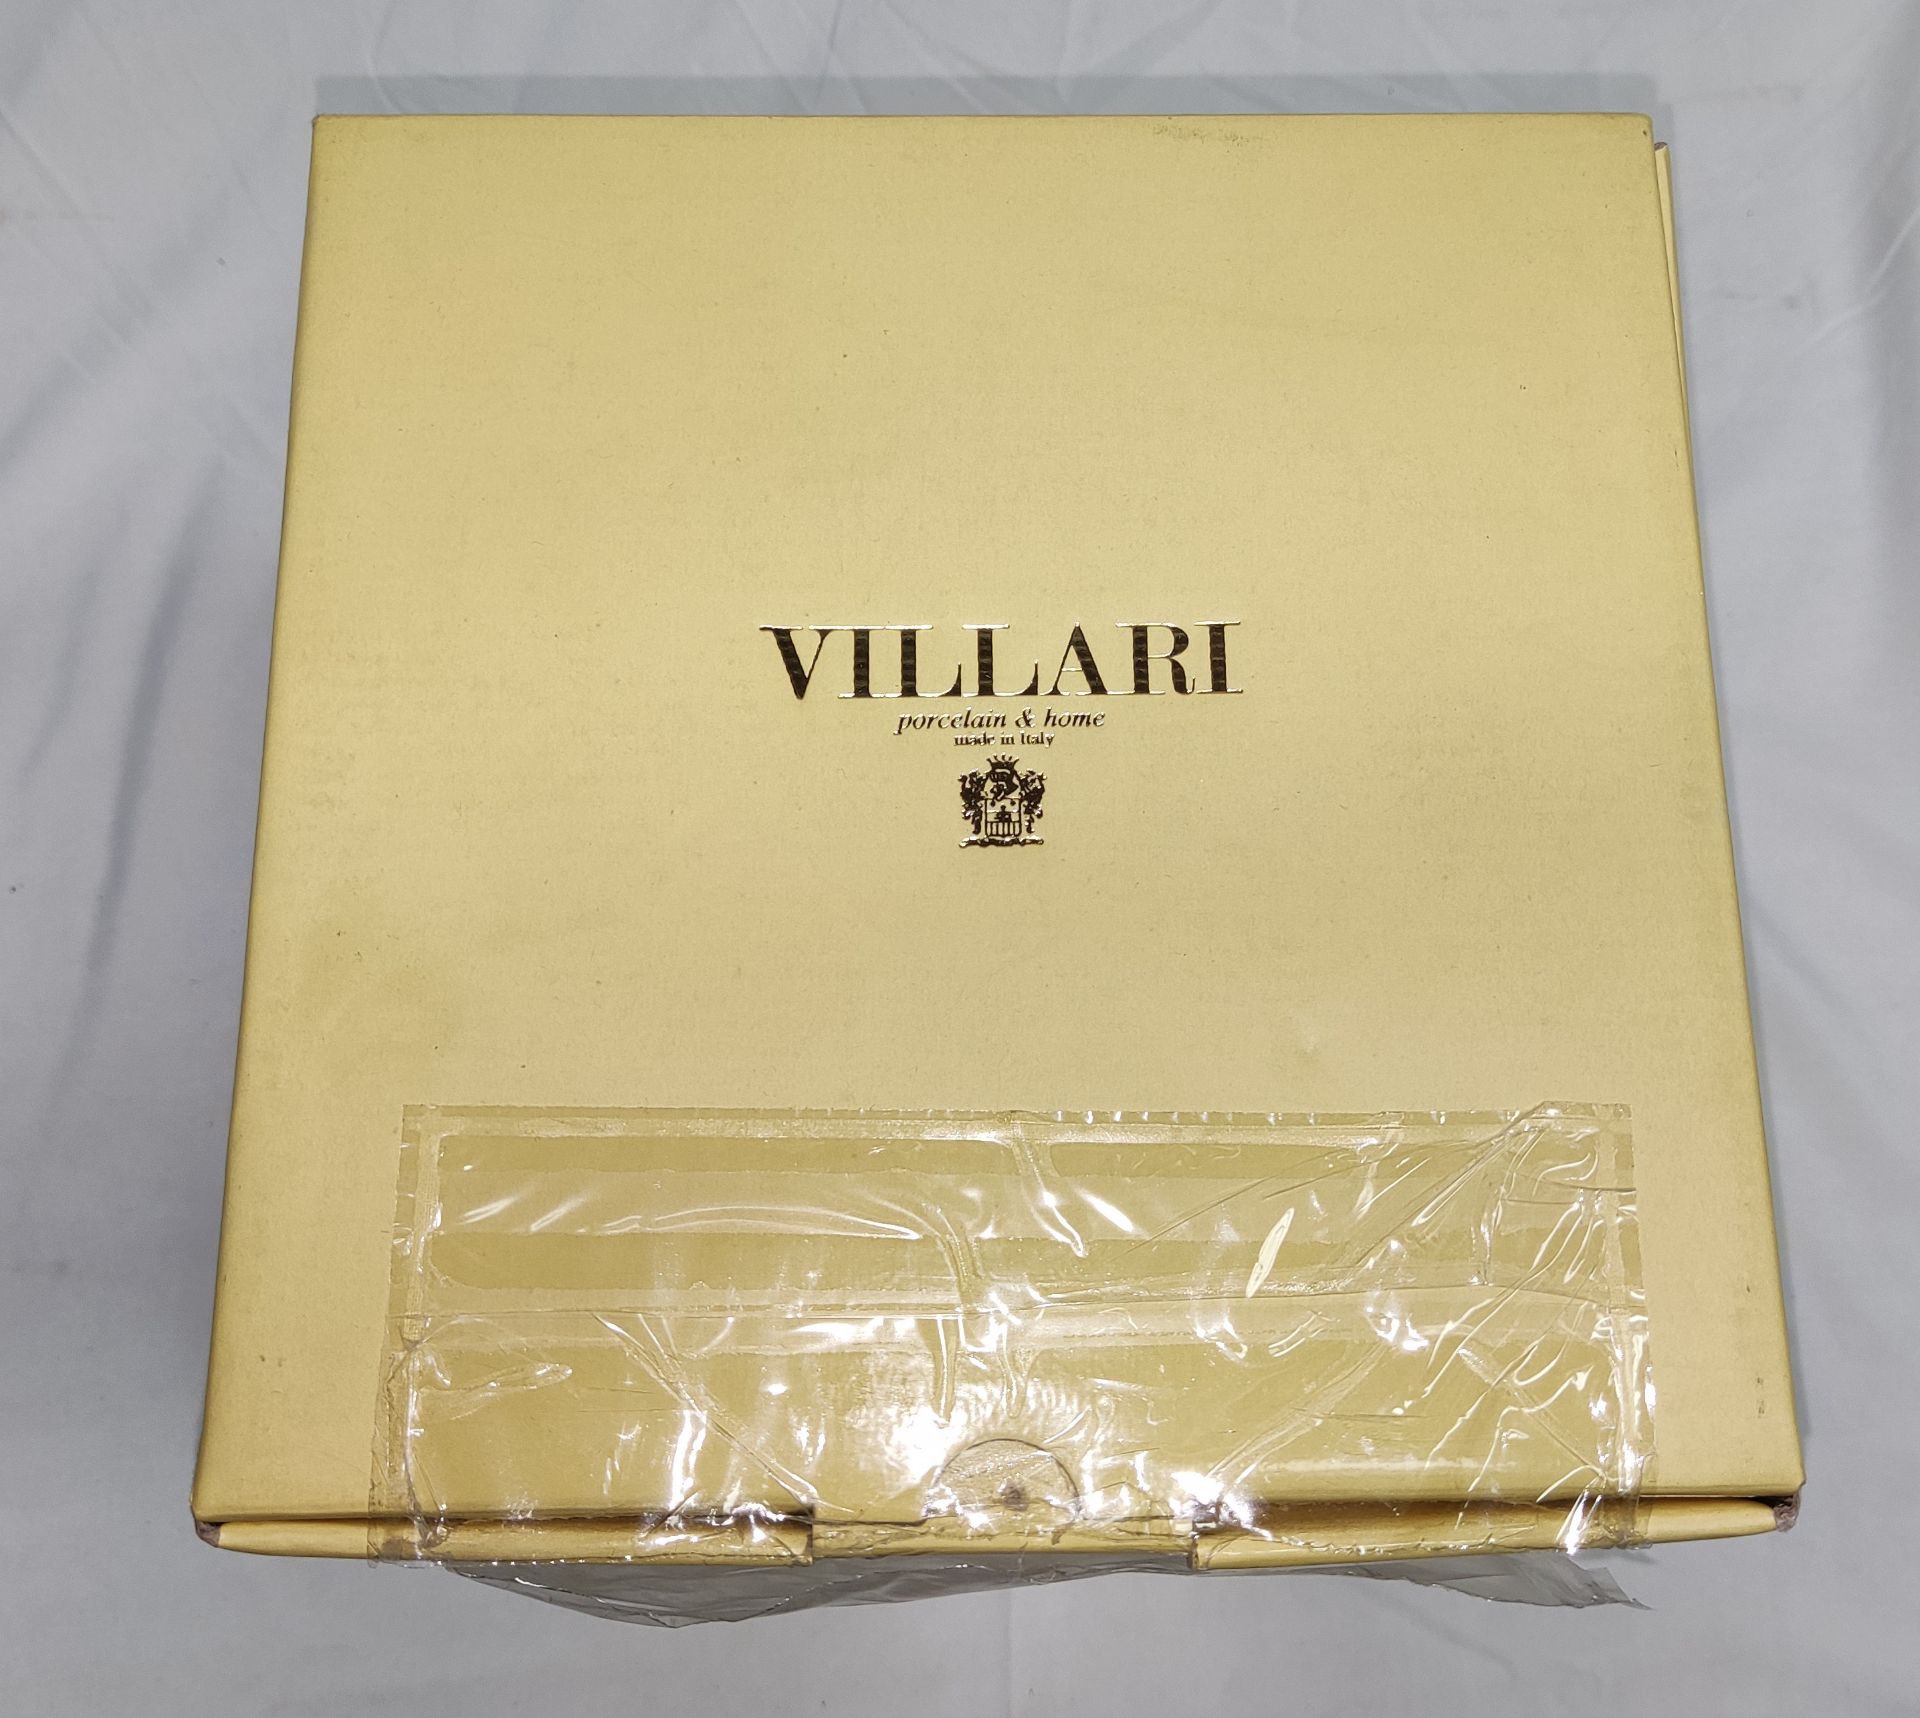 1 x VILLARI Hiroito Square Tissue Box - Chrome Plated - Boxed - Original RRP £529 - Ref: 6125321/ - Image 17 of 17